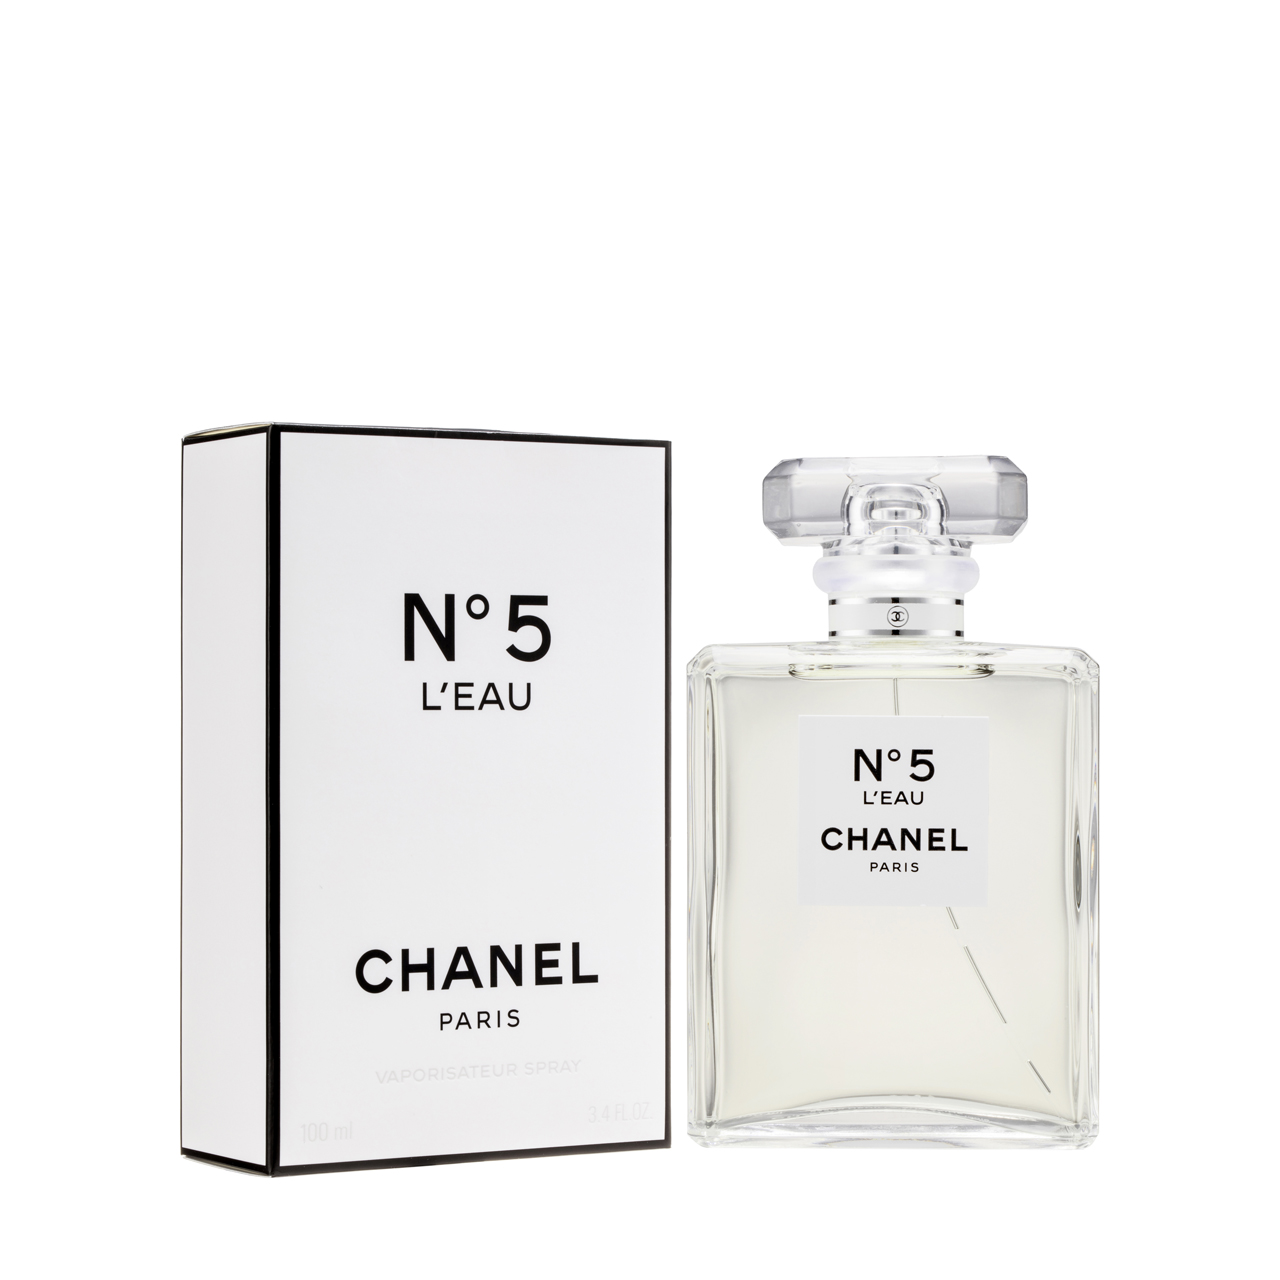 Chanel N°5 L'EAU 淡香水100毫升- 香港莎莎網店